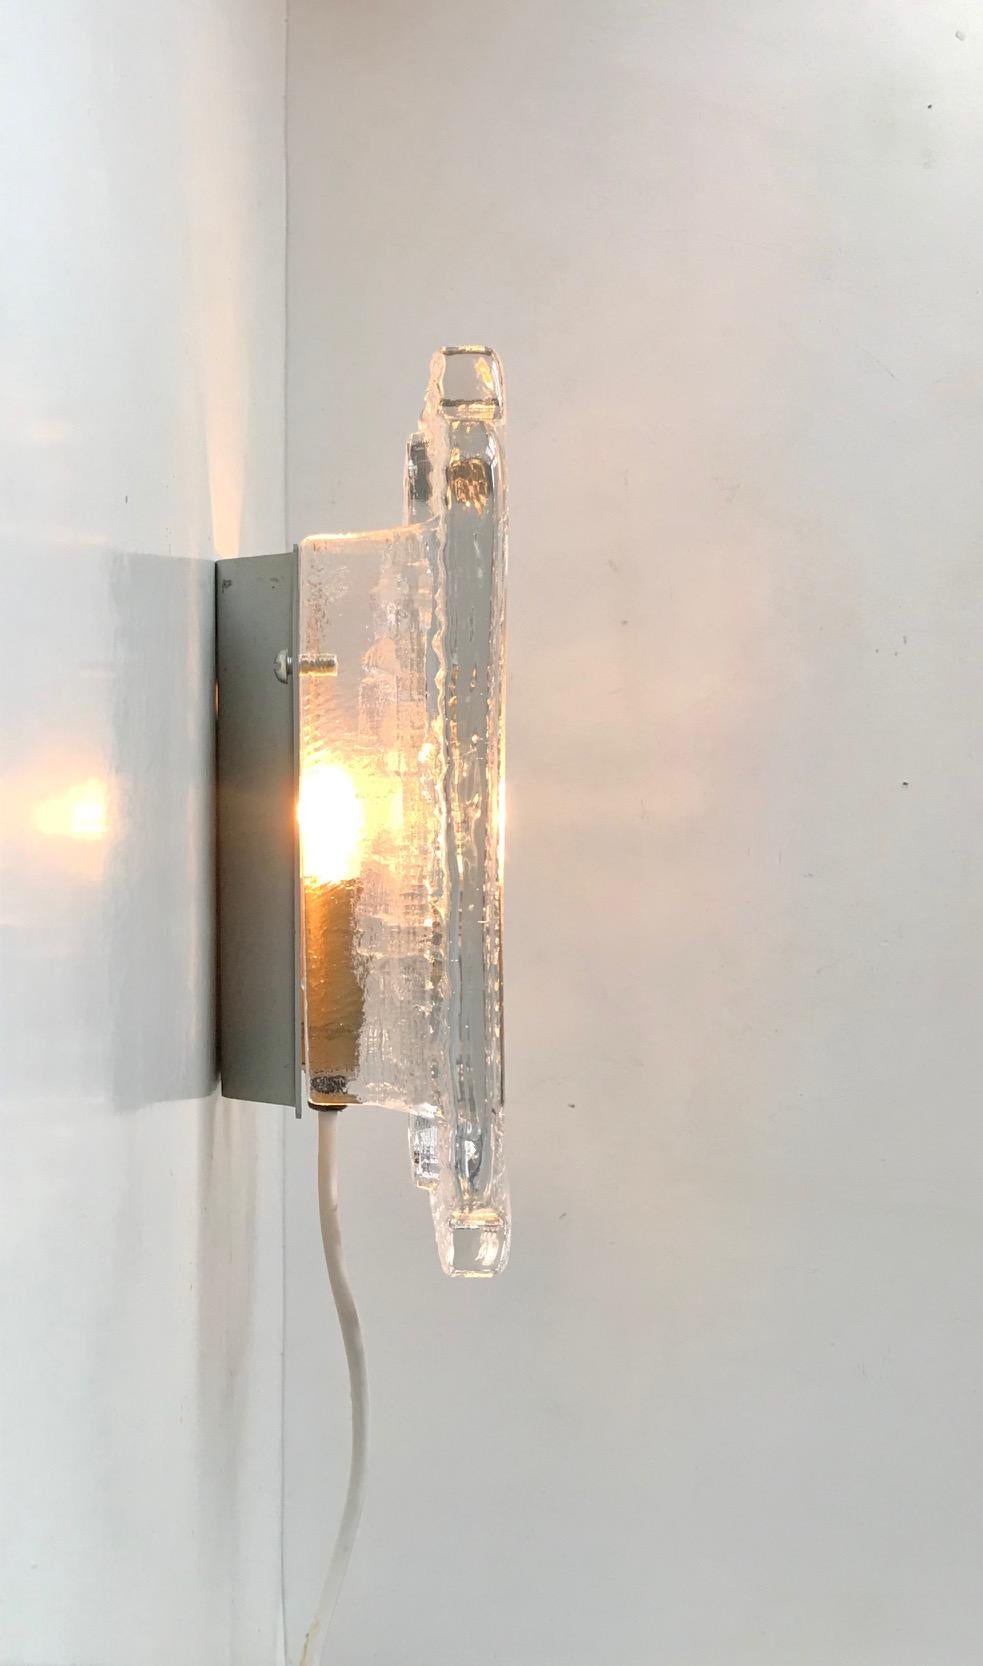 Eine Post-Fagerlund-Wandleuchte aus dickem Eisglas. Hervorragende Wahl für Flure oder gemütliches/ambientes Licht. In den frühen 1970er Jahren bei Orrefors in Schweden hergestellt und entworfen. Abmessungen: 23.5 x 16 x 7,5 cm.